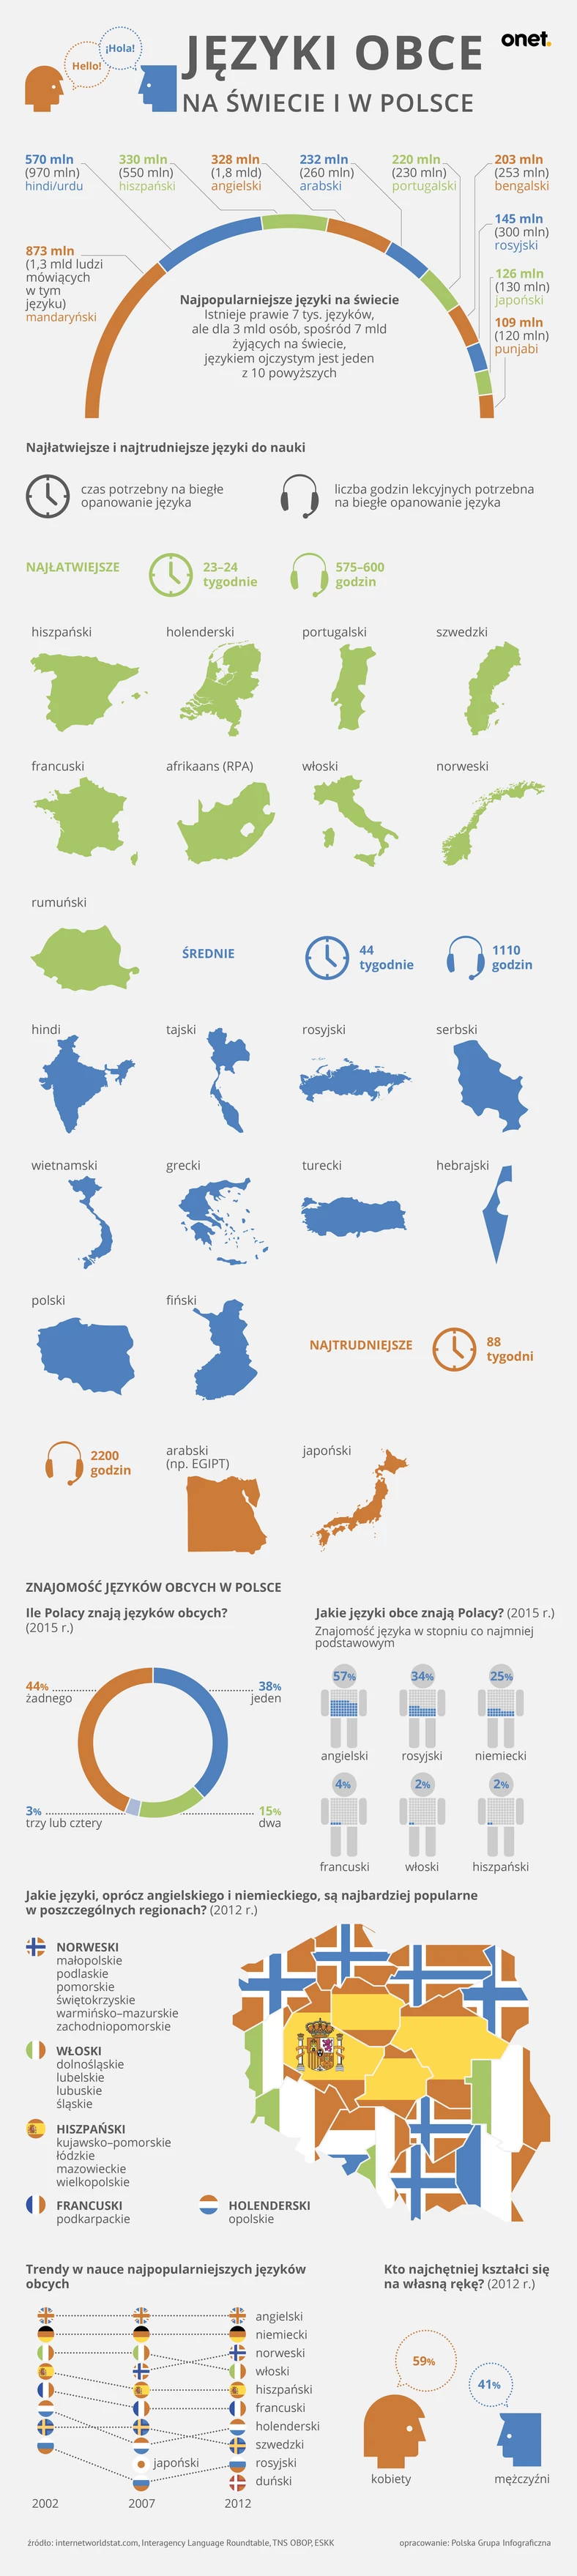 Języki obce - infografika